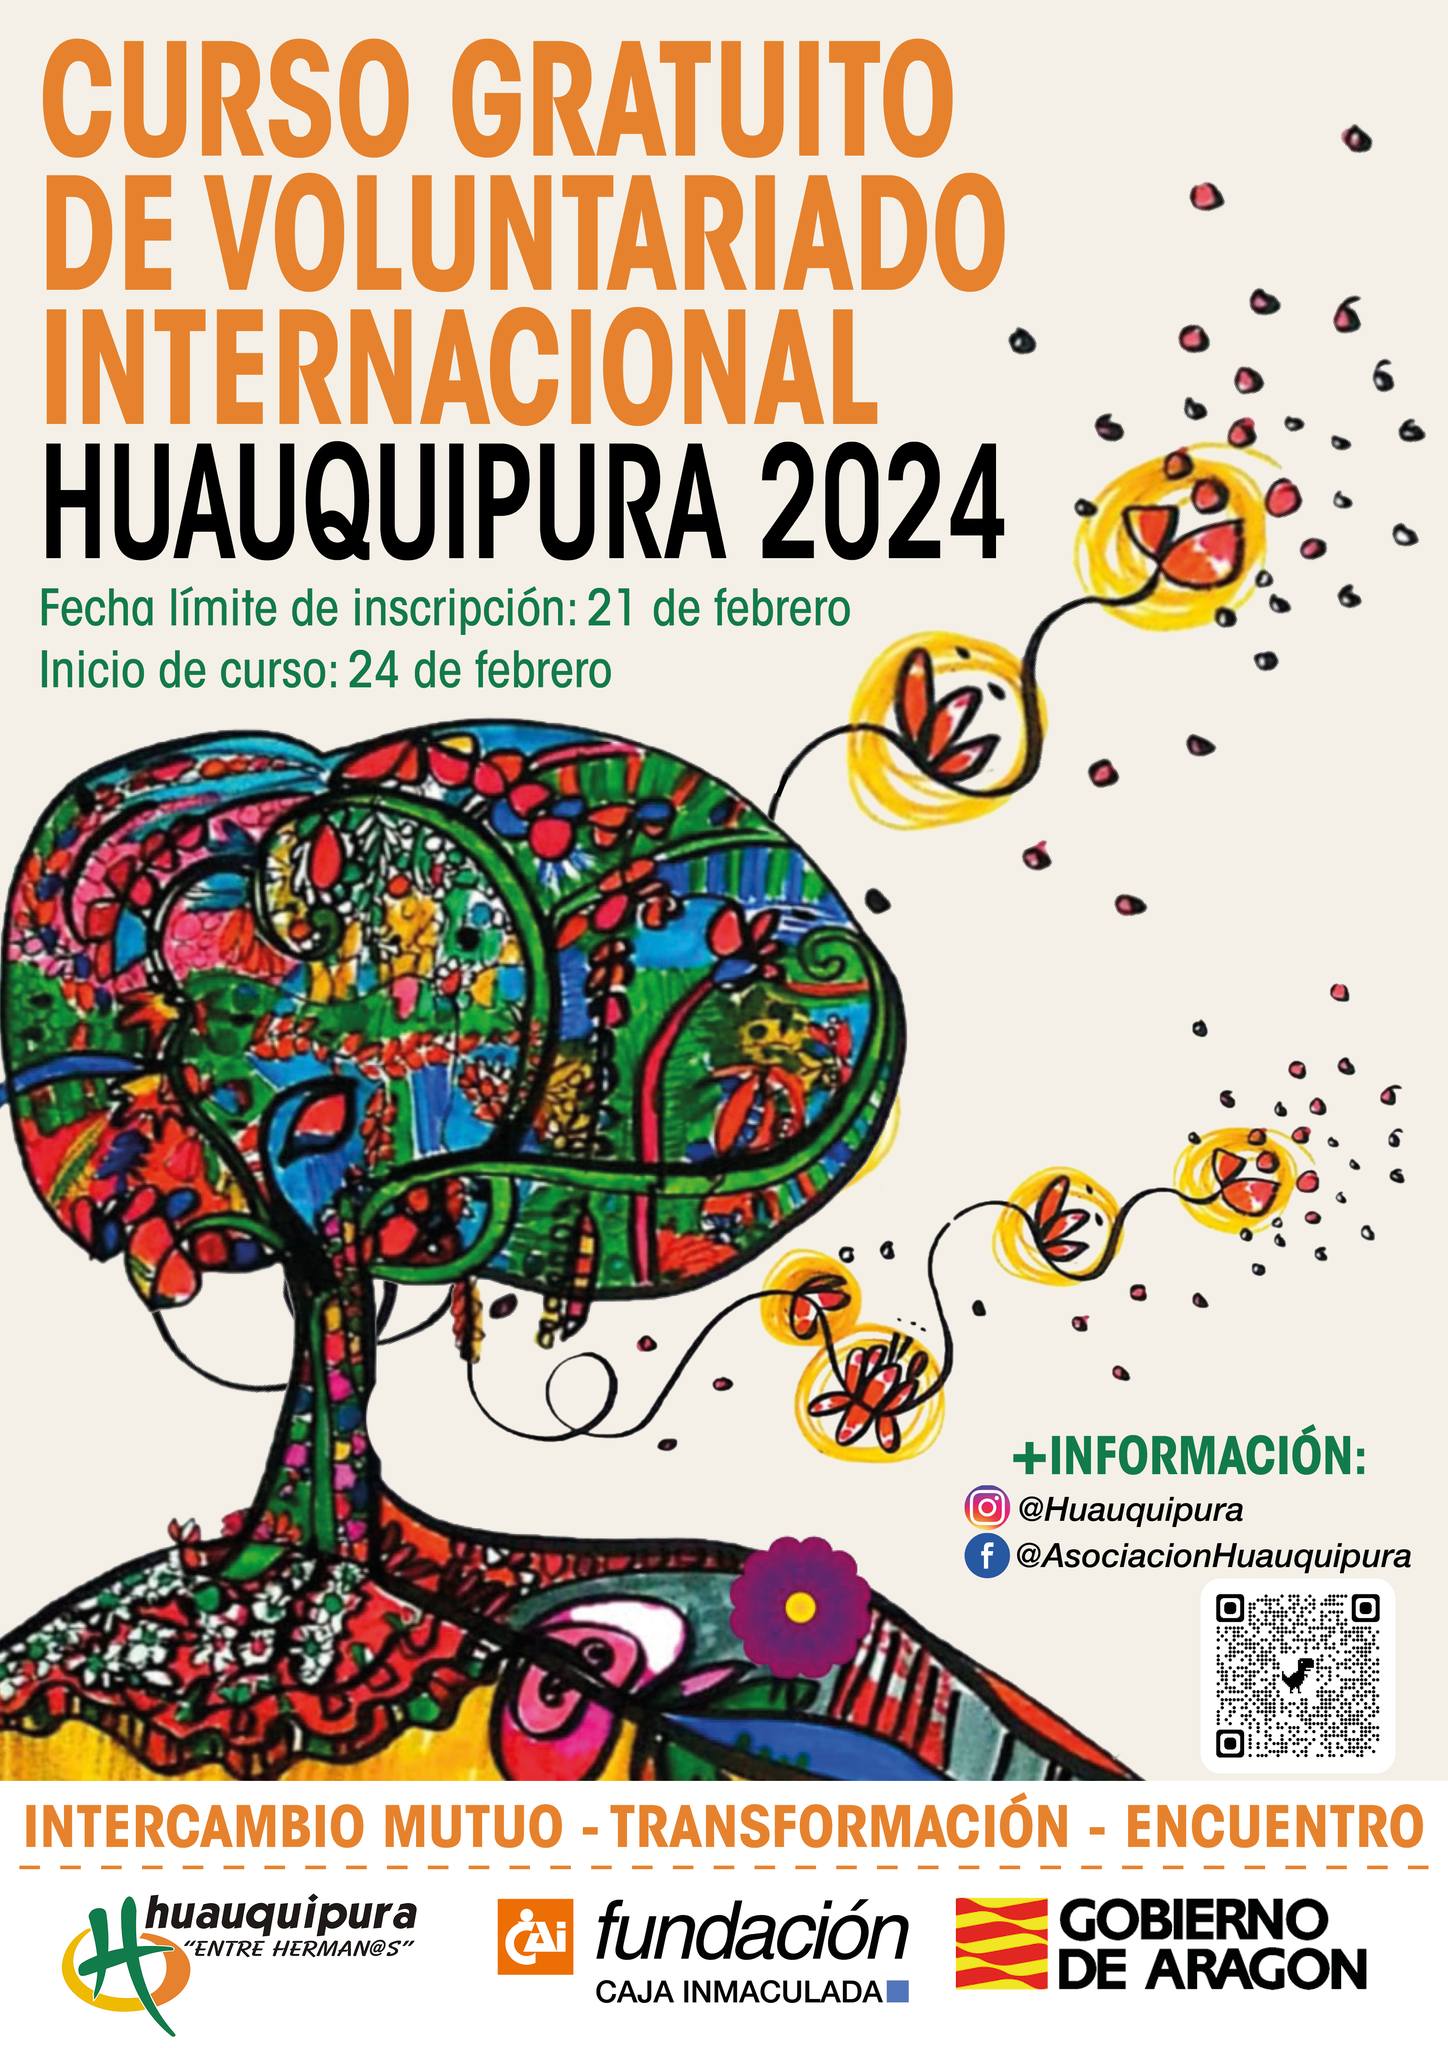 Curso voluntariado internacional Huauquipura